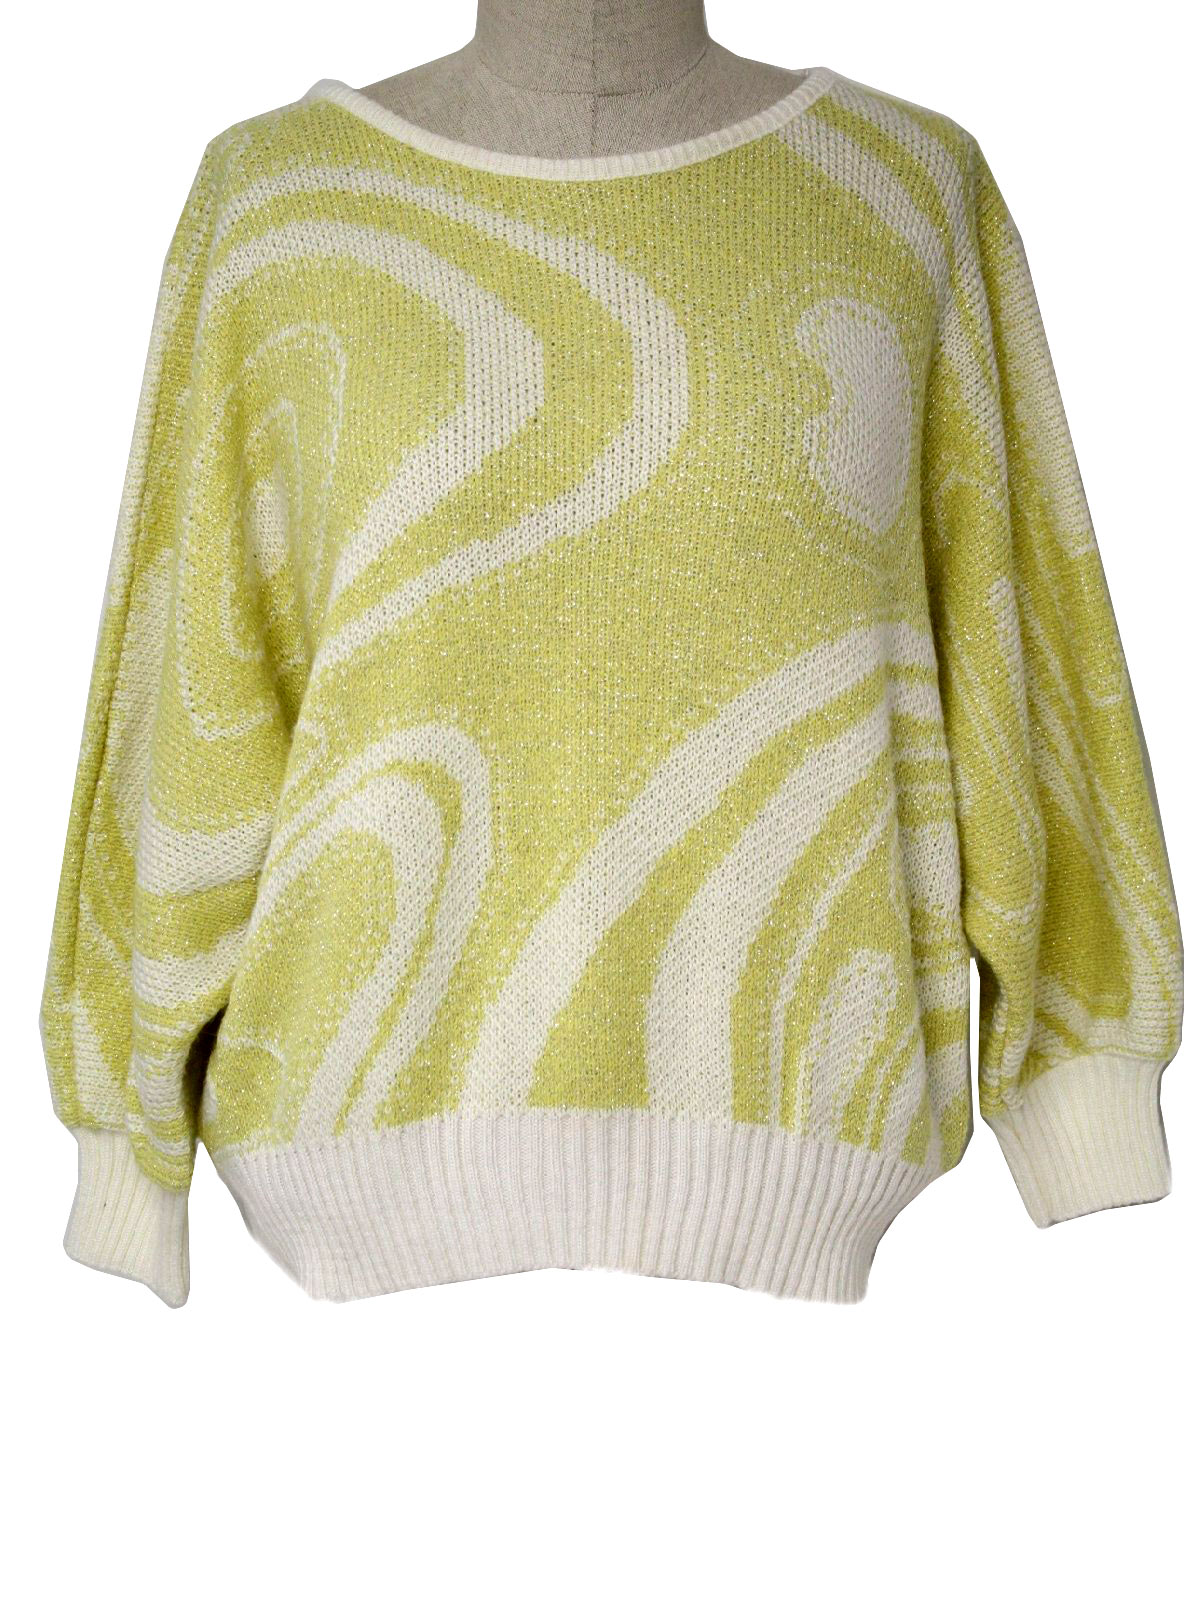 Designers Originals 80's Vintage Sweater: 80s -Designers Originals ...